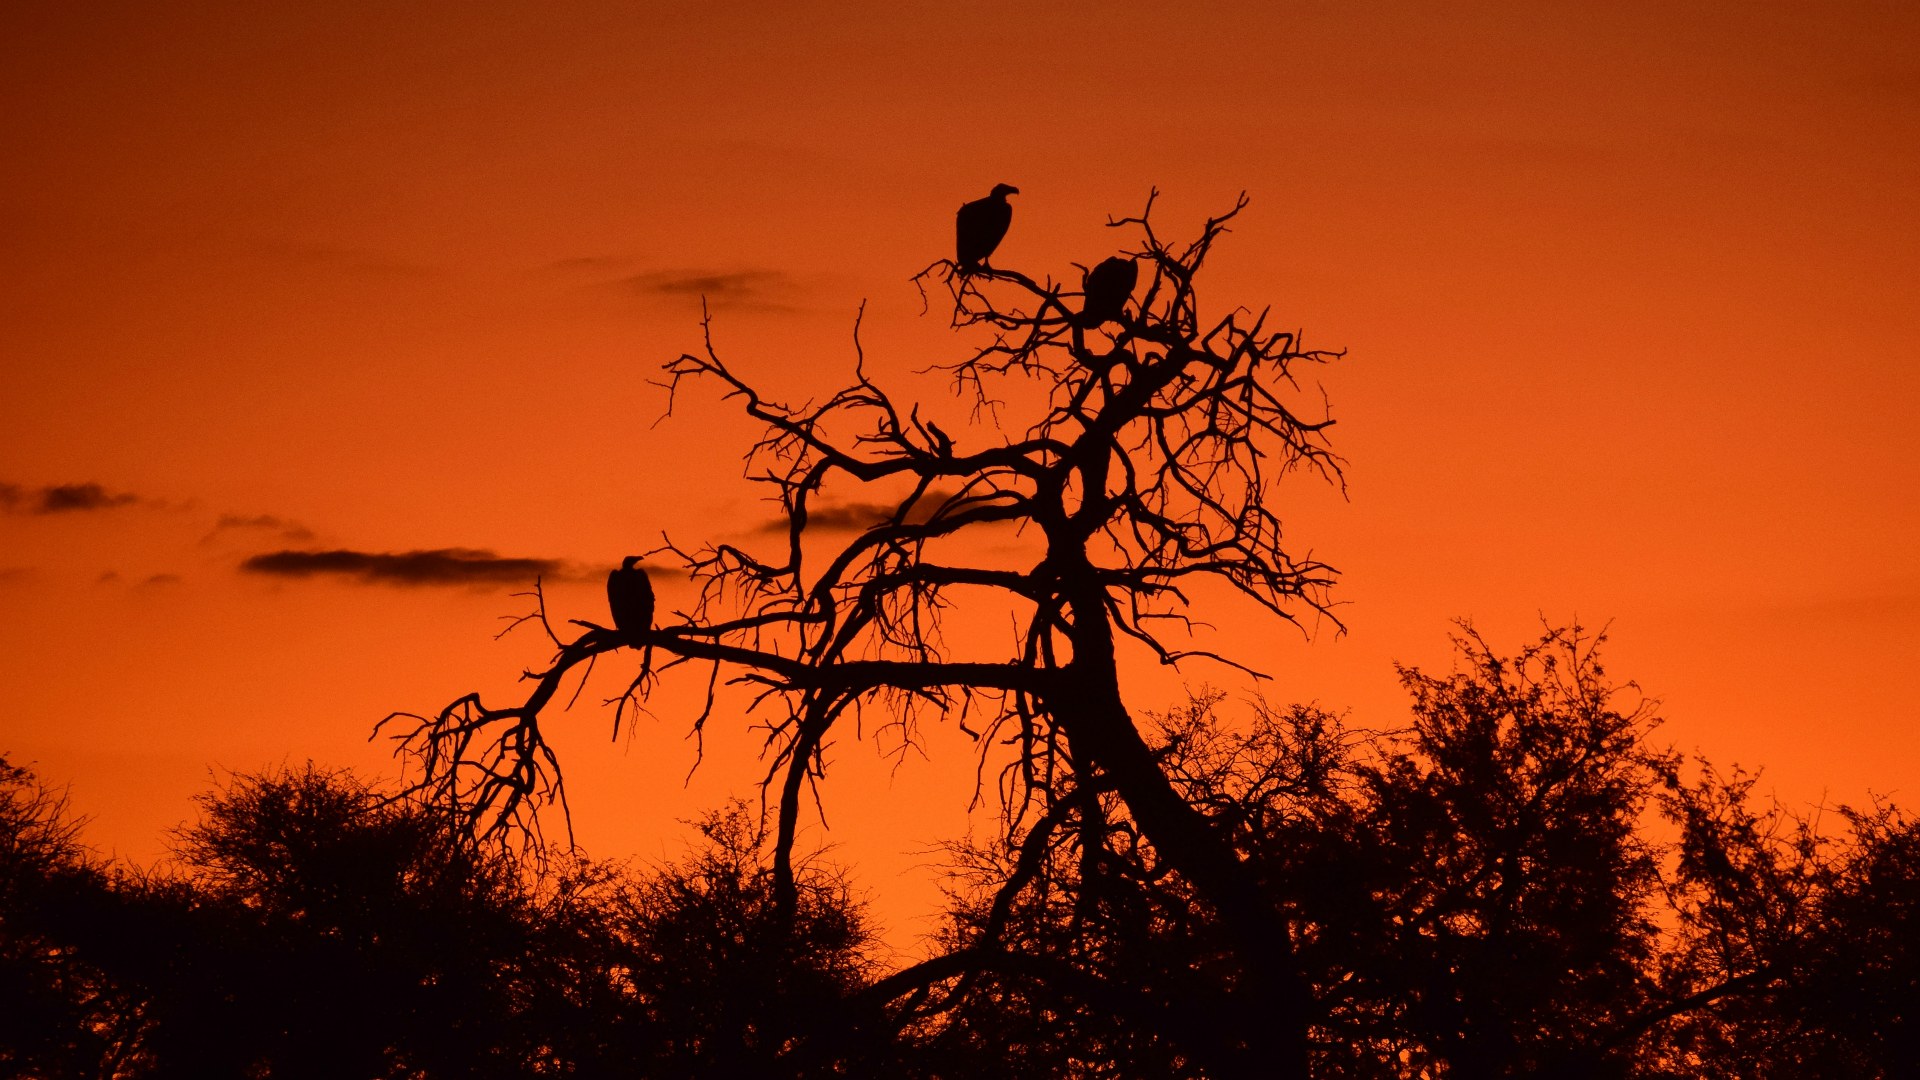 Vultures at sunset, Santawani Concession